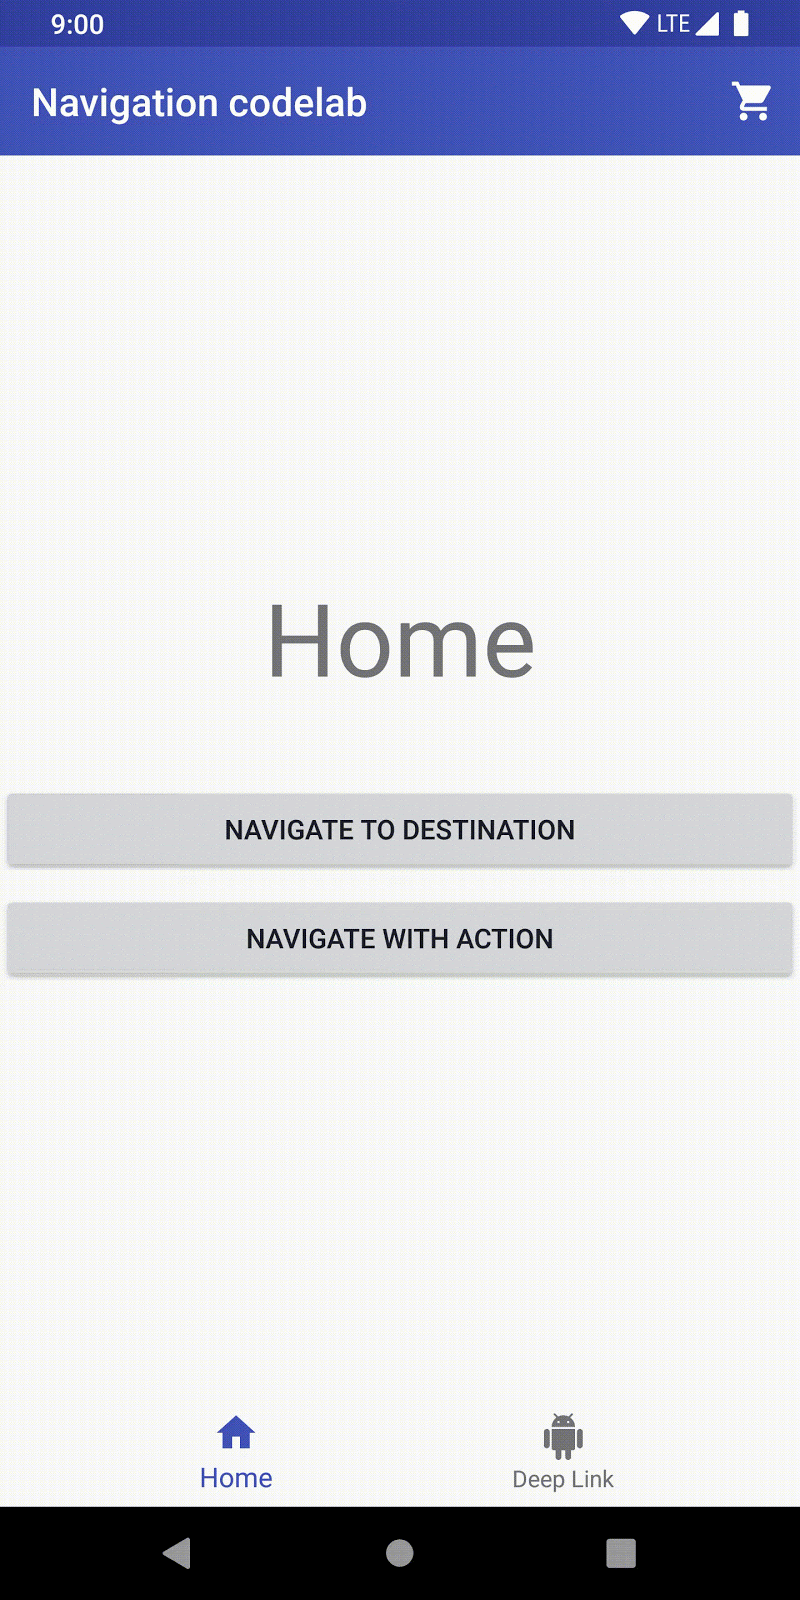 ユーザーは [Home] から [Navigate To Destination] をクリックして、[Step One] に移動します。